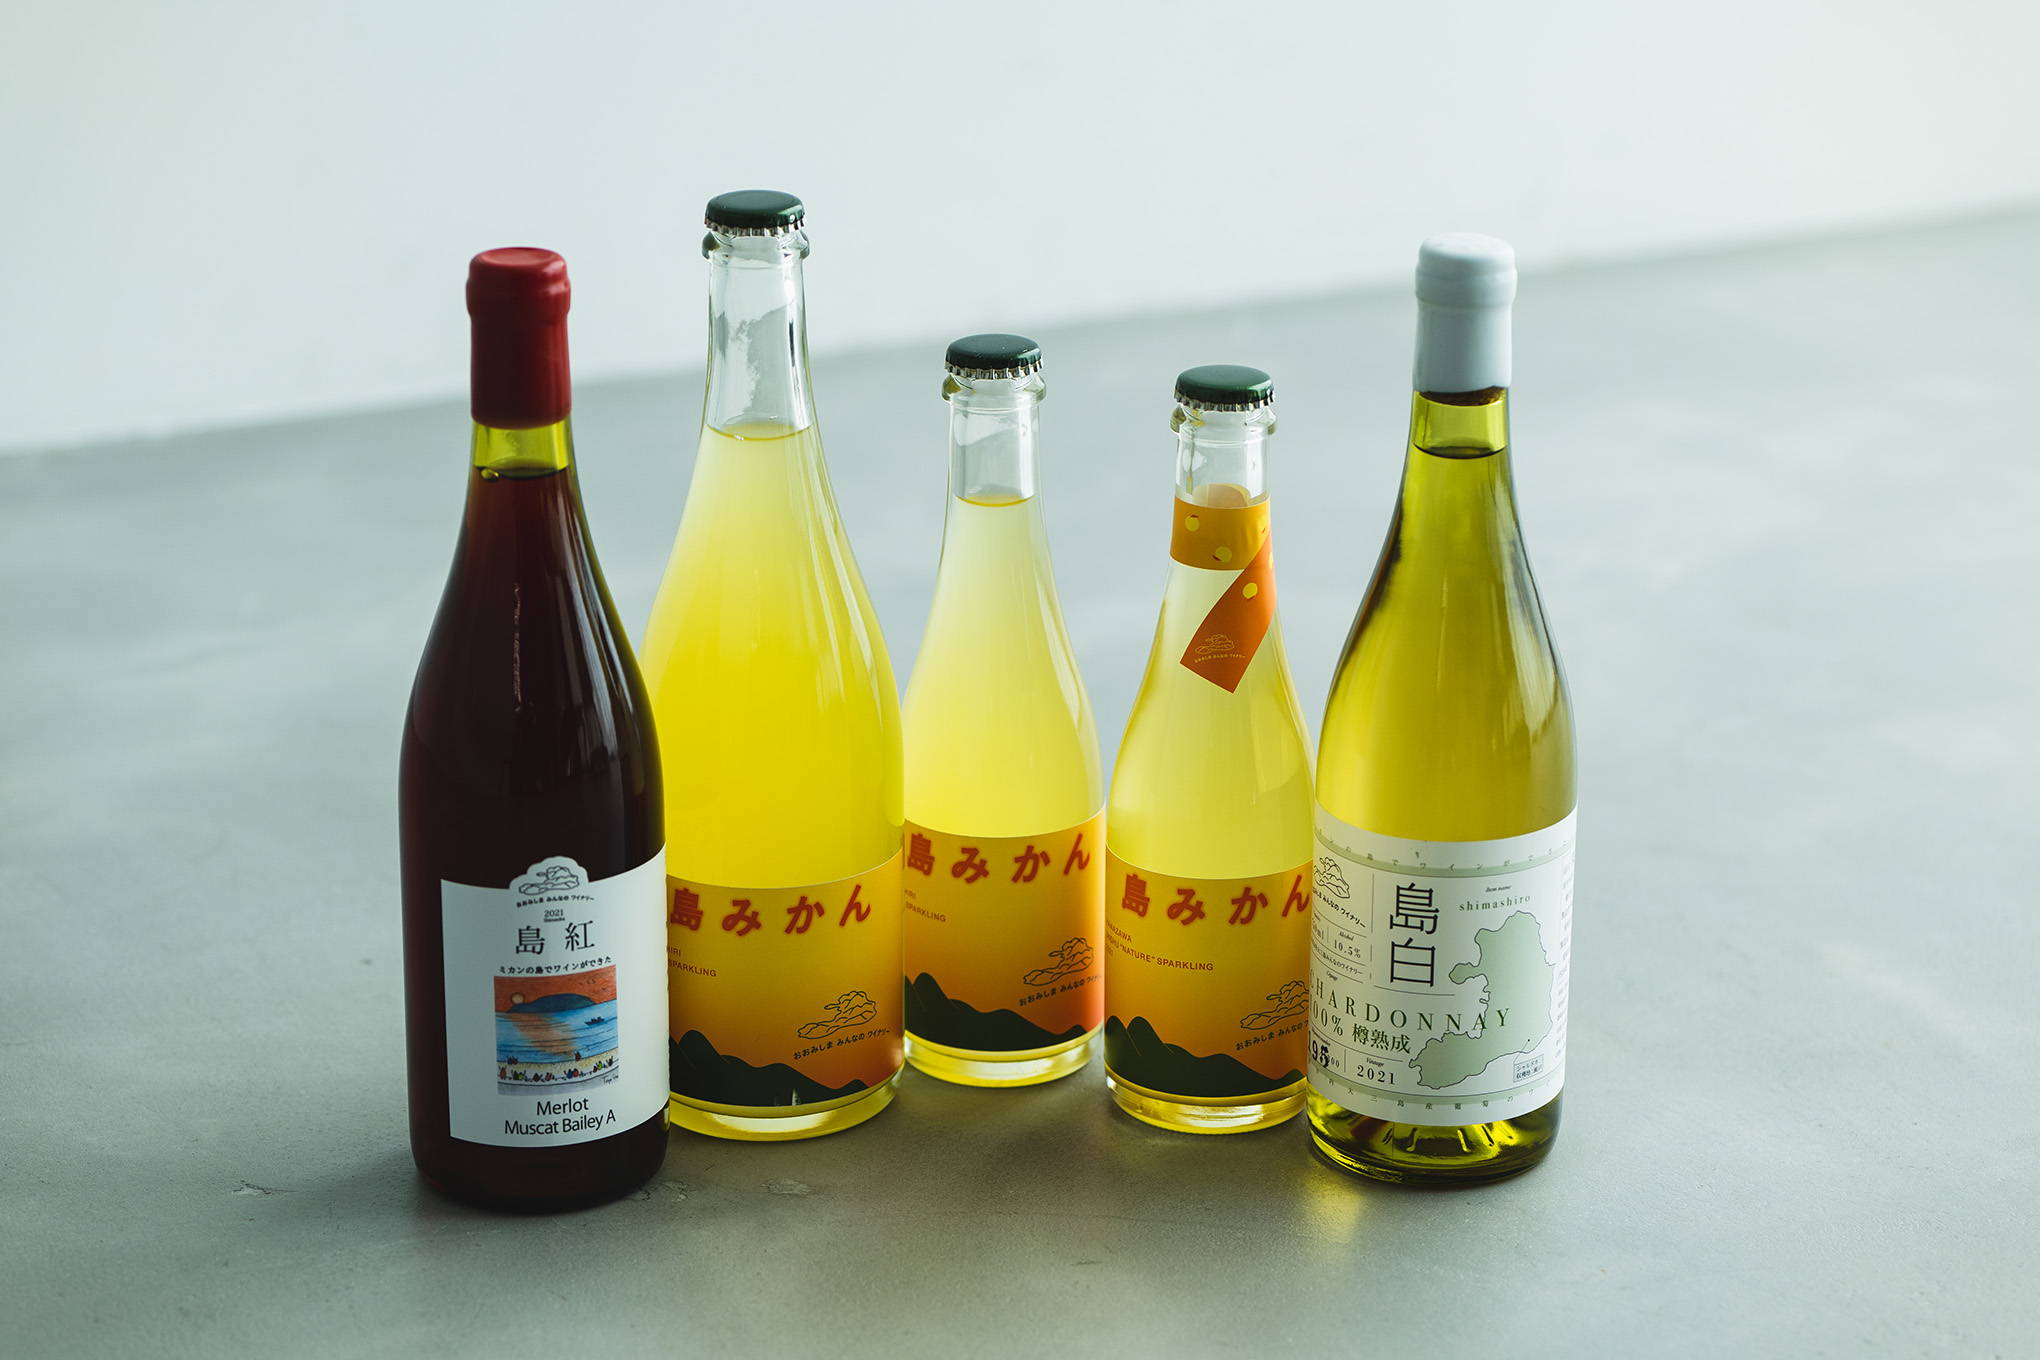 大三島の日本ワインを抜栓すれば、風光明媚な瀬戸内の島の風景が目に浮かぶ。柑橘の耕作放棄地が、美しいワインを産み出すまで。